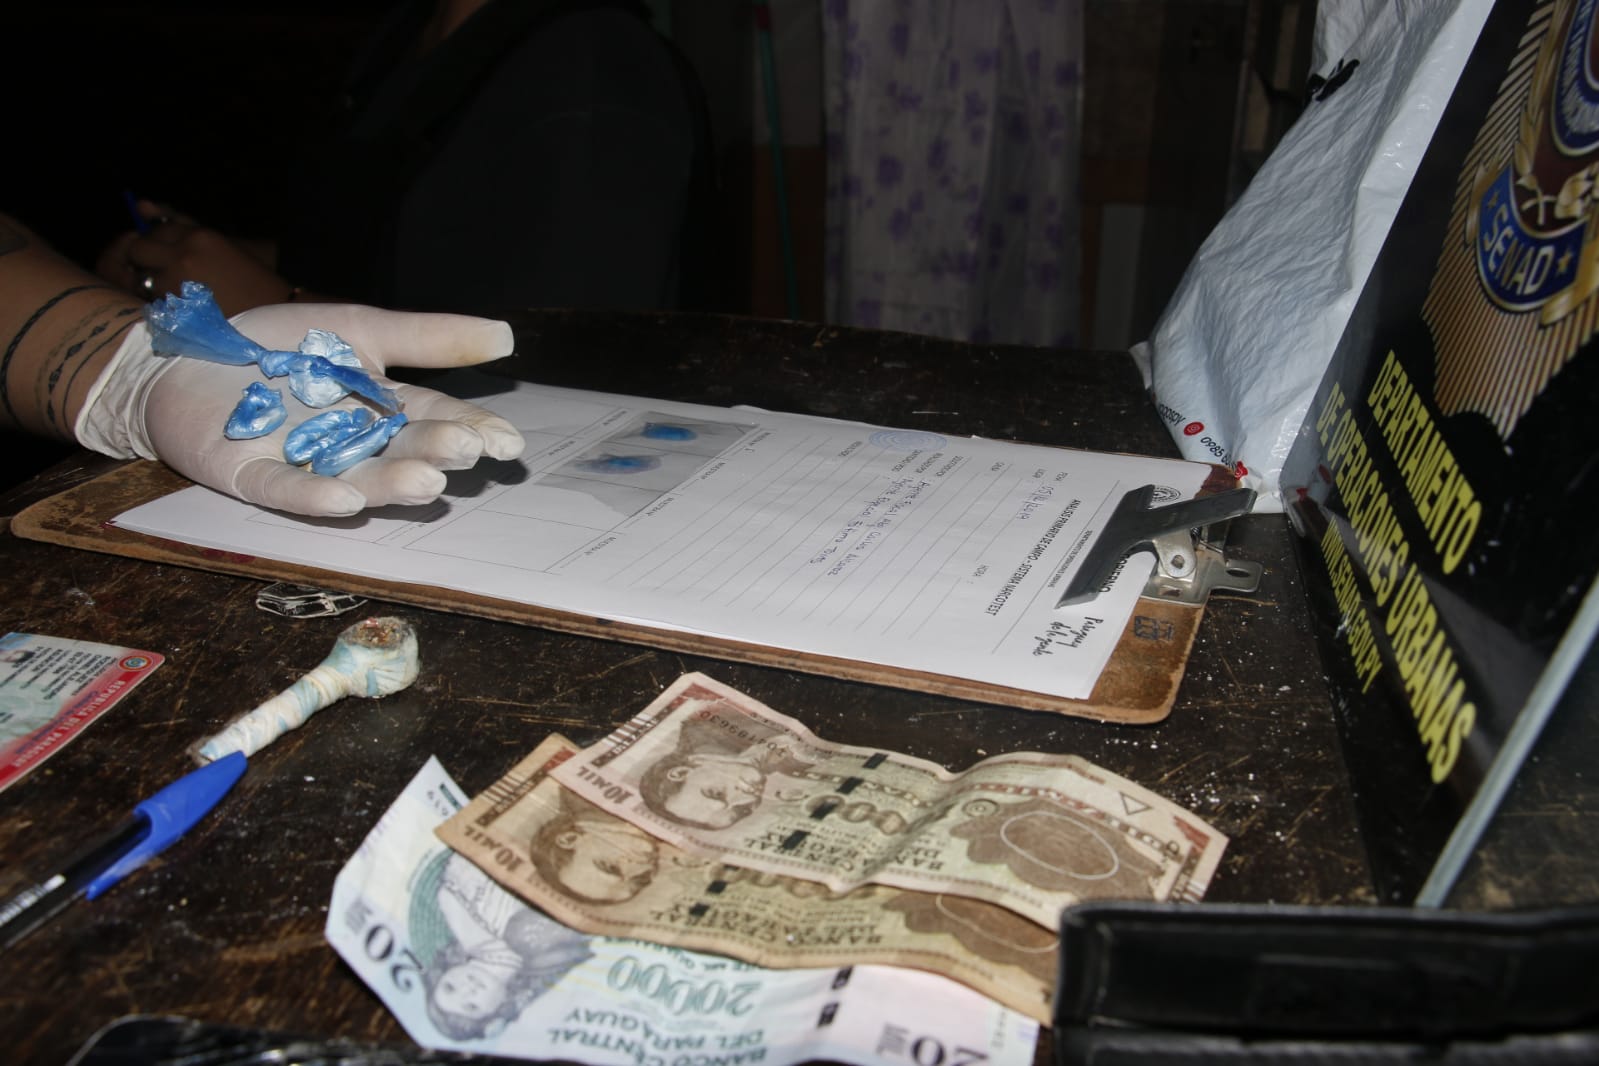 Agentes de la Senad incautaron 6.7 gramos de cocaína y lograron detener a un presunto microtraficante. Foto: Senad